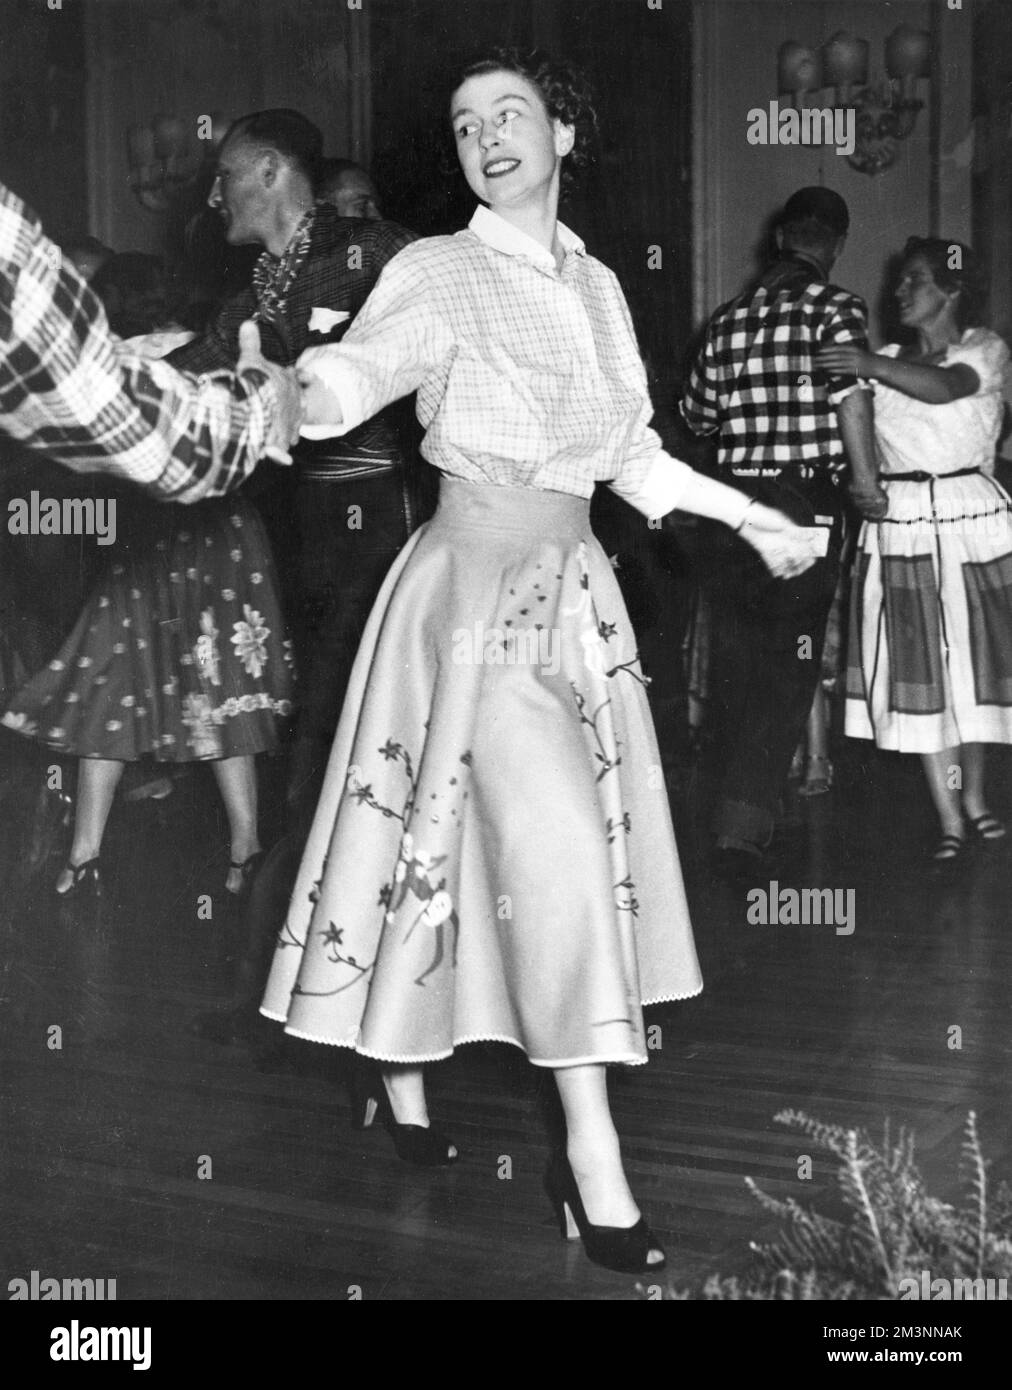 Prinzessin Elizabeth (Königin Elizabeth II.) tanzt während der Royal Tour 1951 einen Canadian Square Dance im Government House, Ottawa. Datum: 1951 Stockfoto